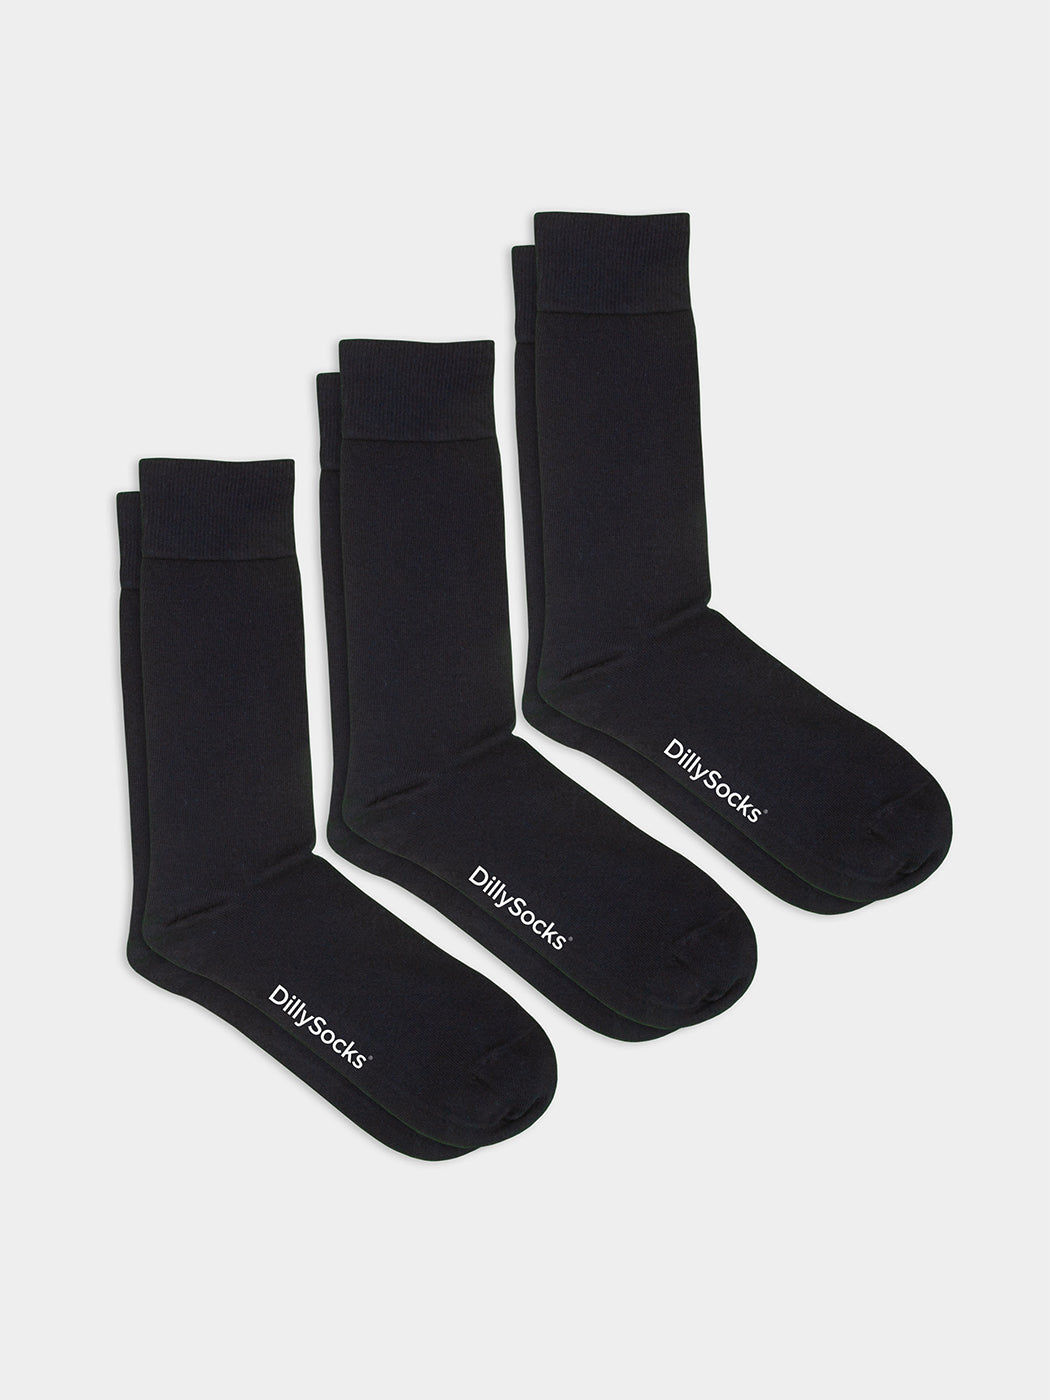 Pack of 3 pairs of plain marine socks